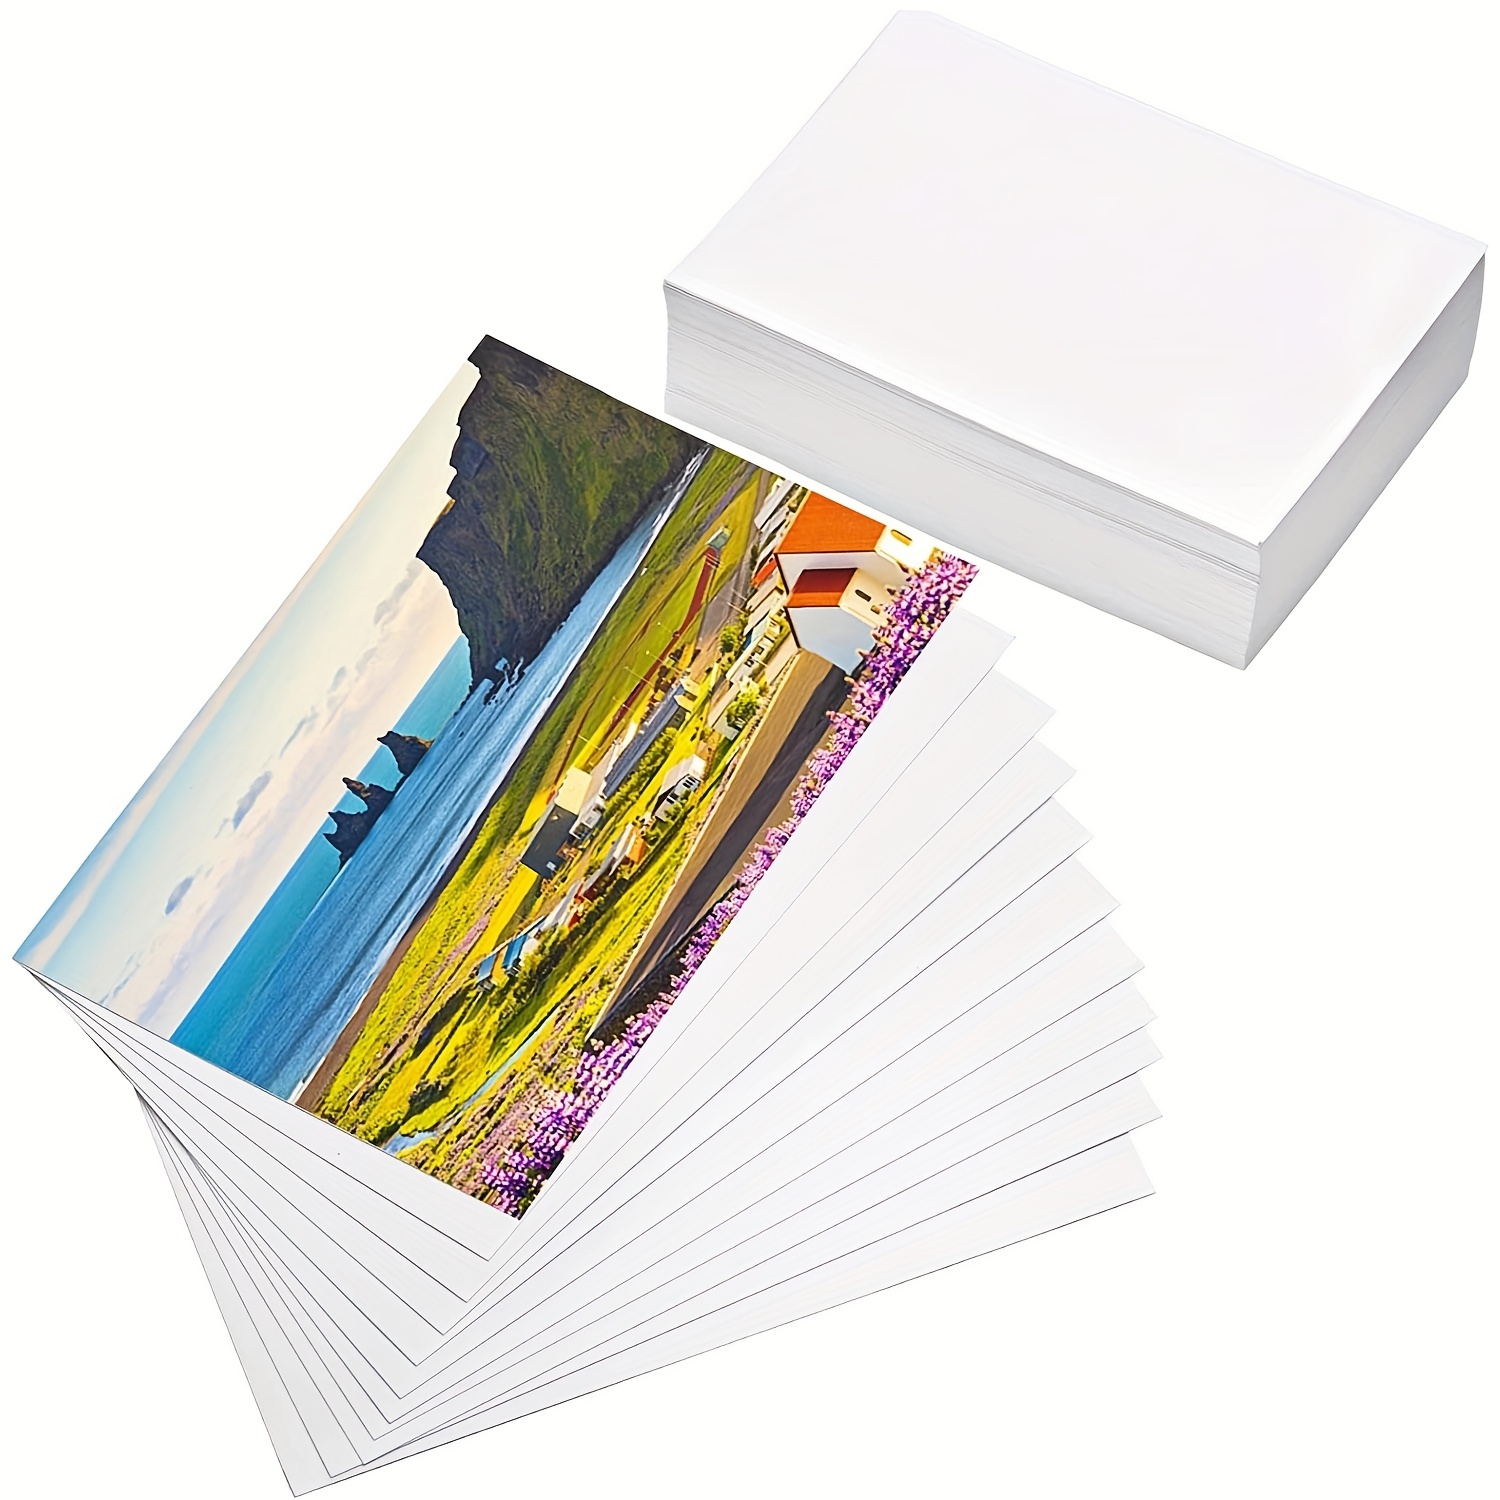 Papier photo brillant - 10 x 15 cm - 130 feuilles - Pour imprimante jet  d'encre - Papiers photo - Papiers imprimante - Imprimer